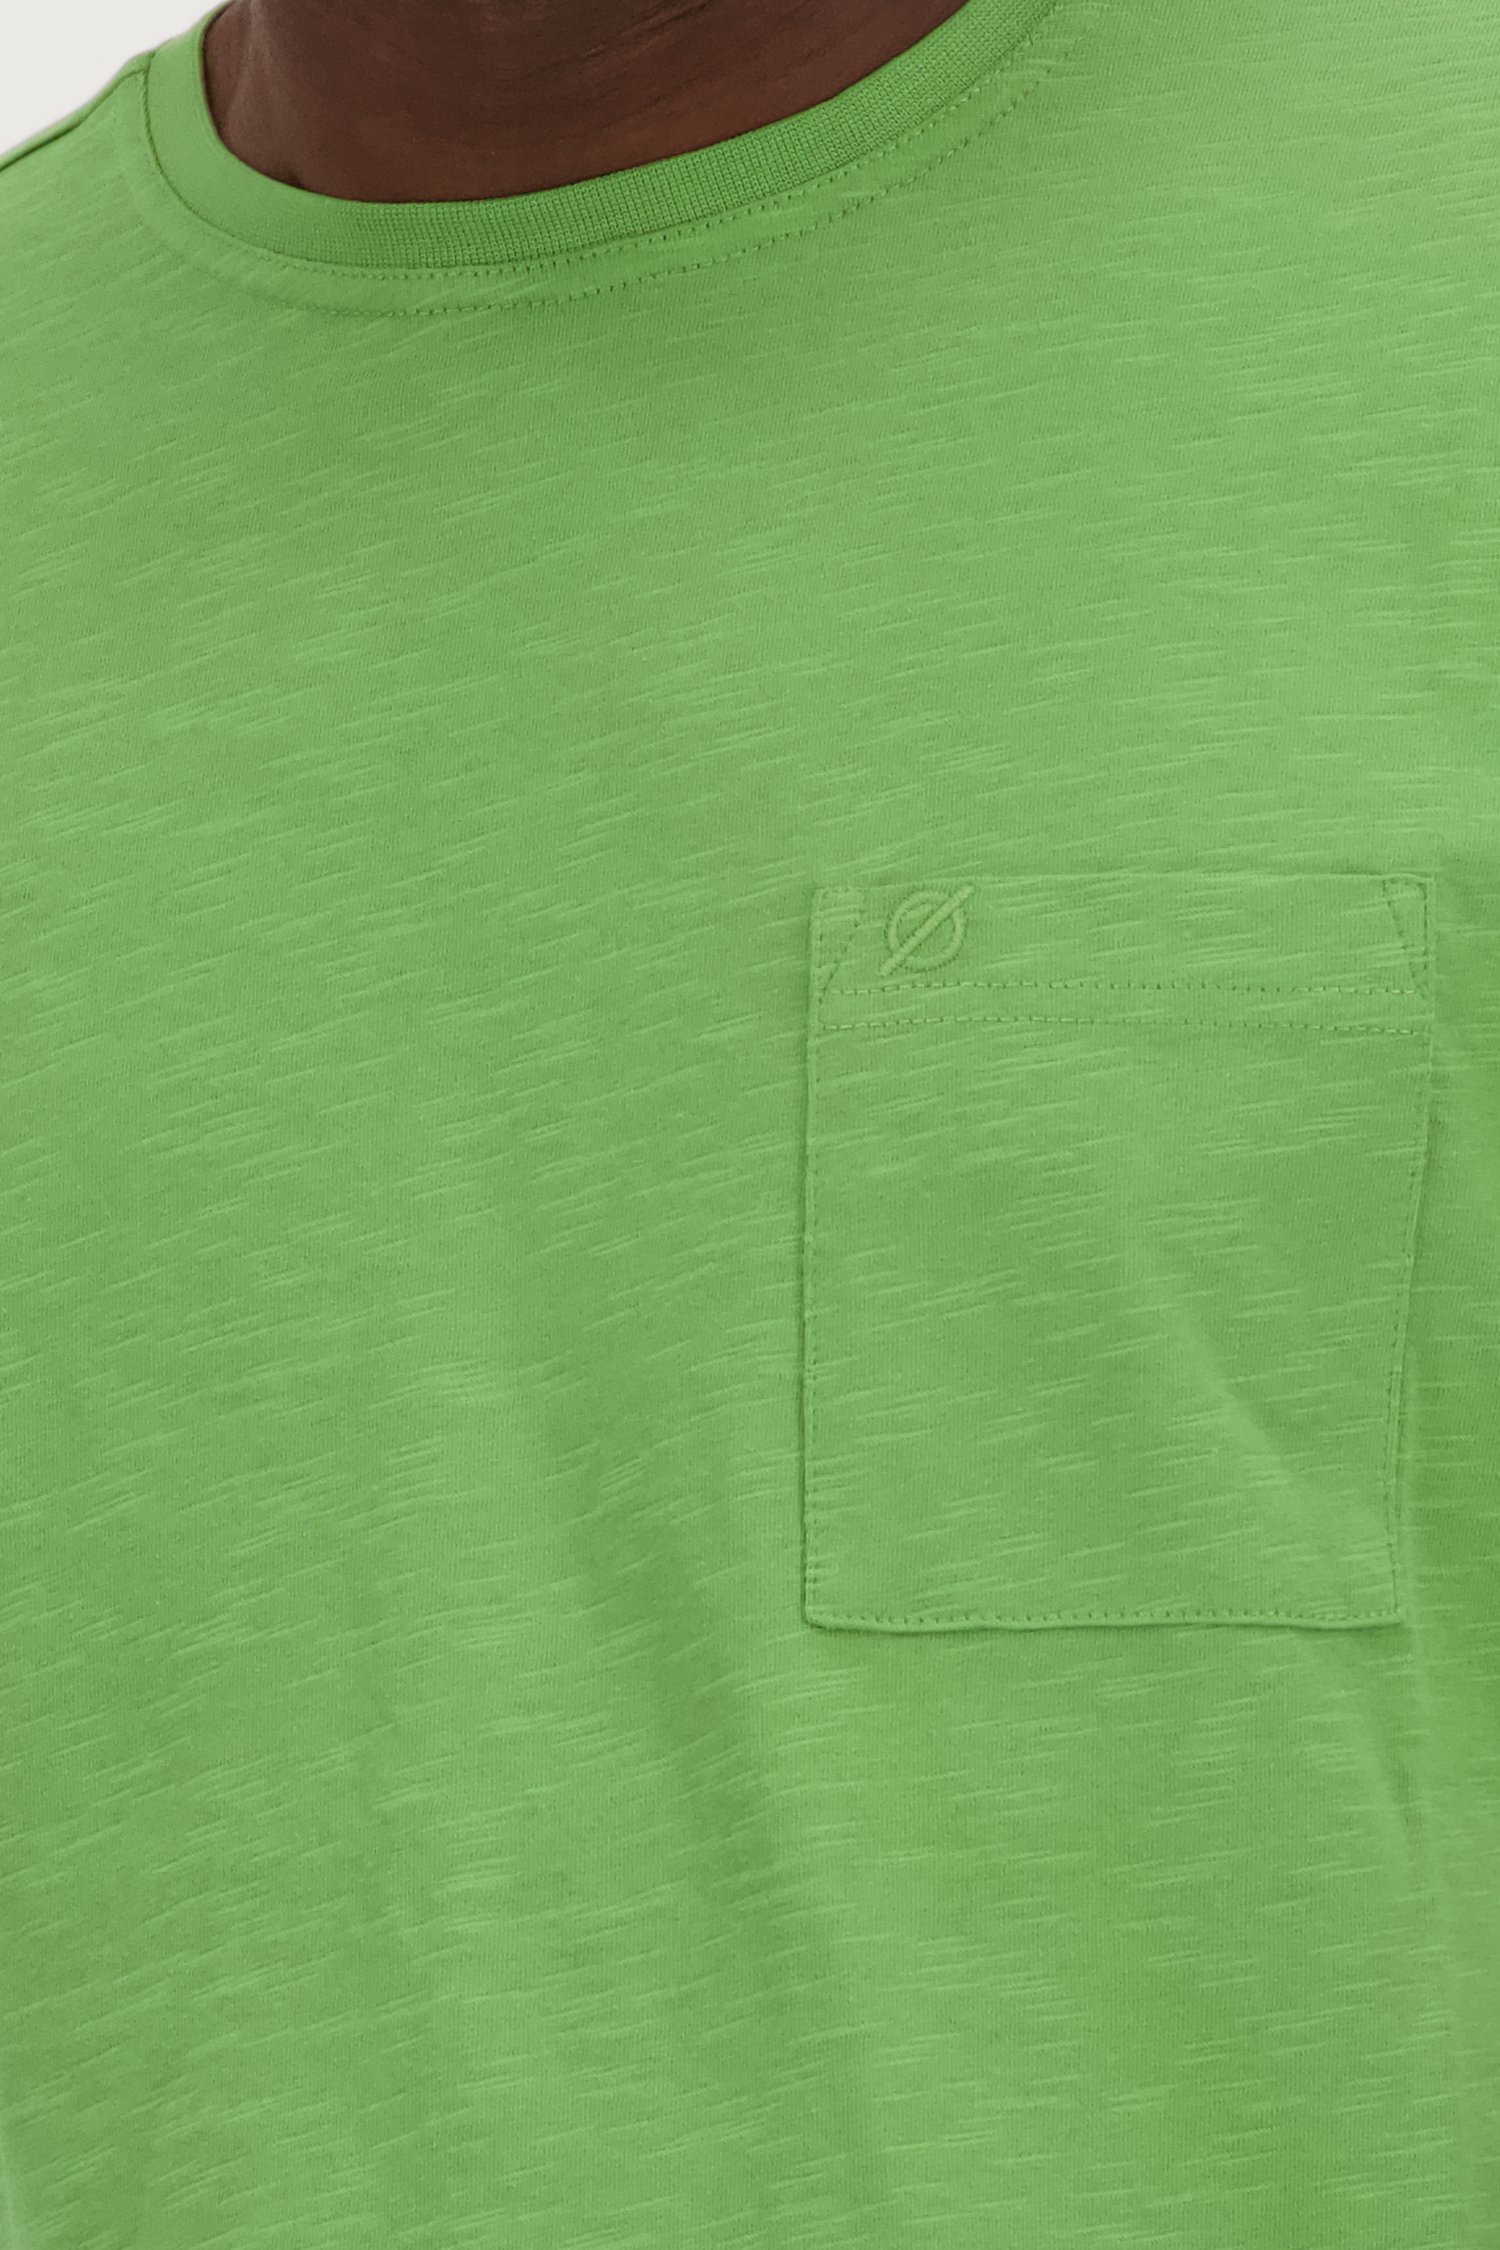 Groen T-shirt met ronde hals van Ravøtt voor Heren